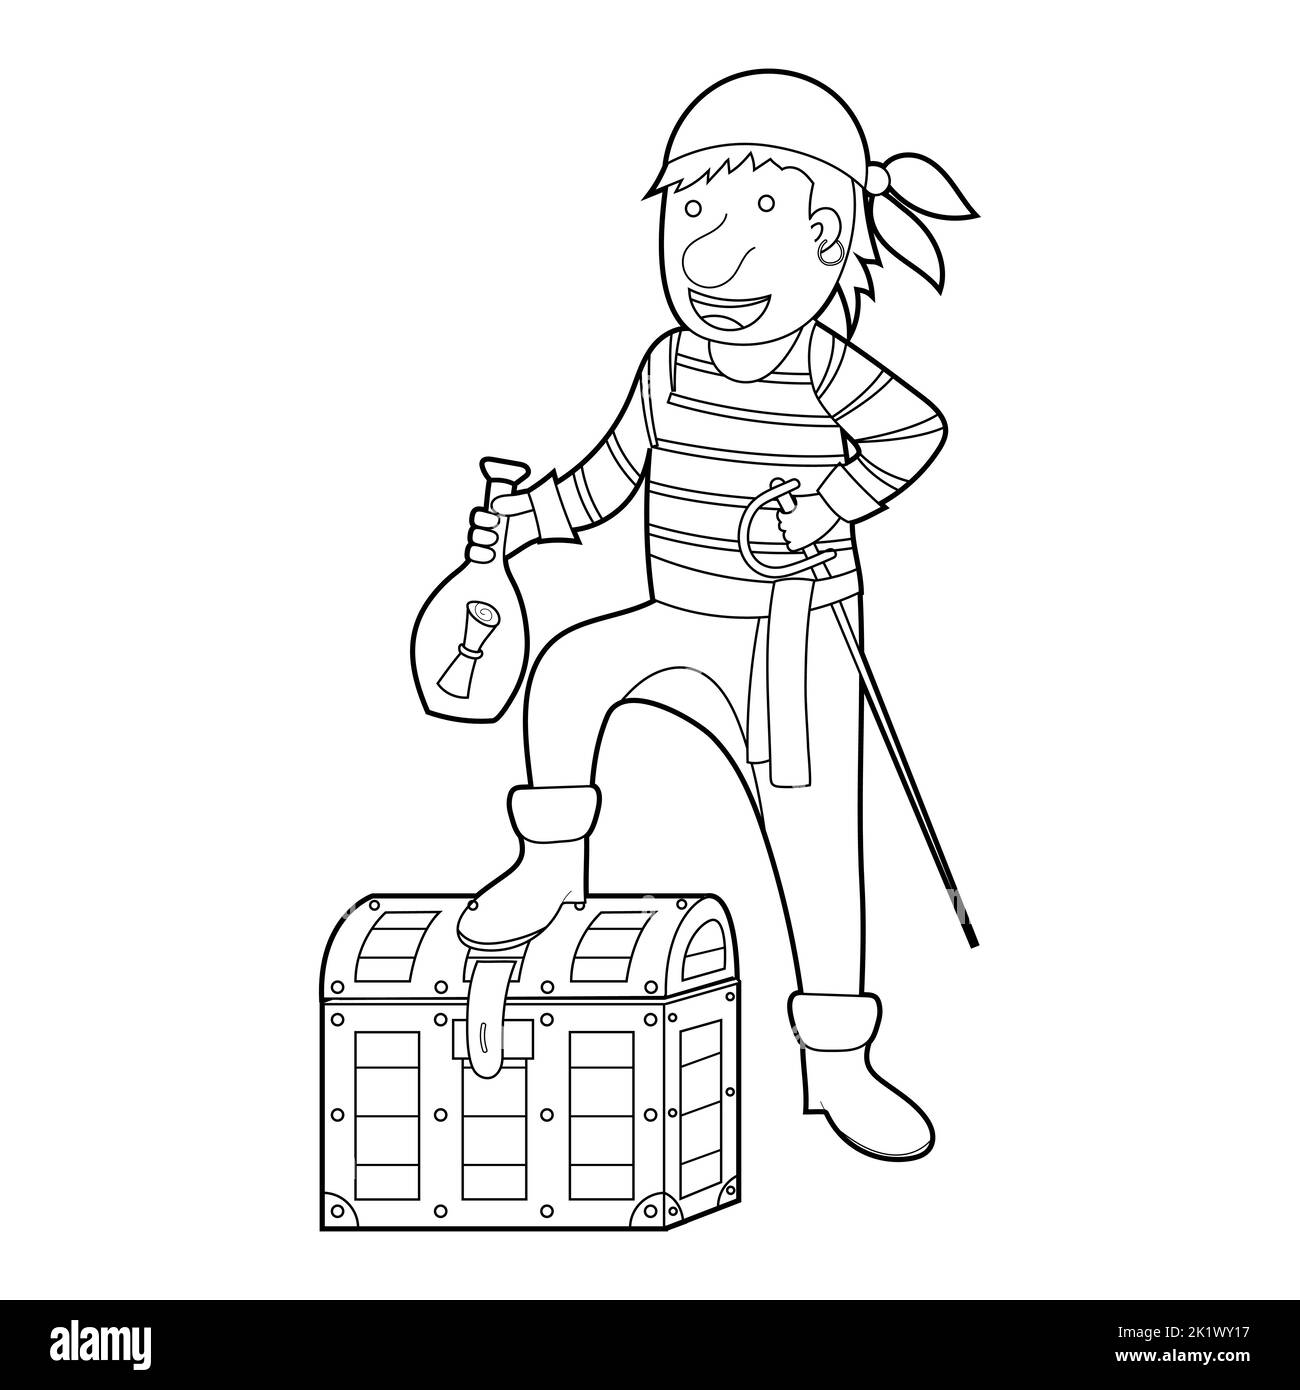 Livre de coloriage pour enfants, le pirate de dessin animé est debout sur une poitrine. Vecteur isolé sur fond blanc Illustration de Vecteur